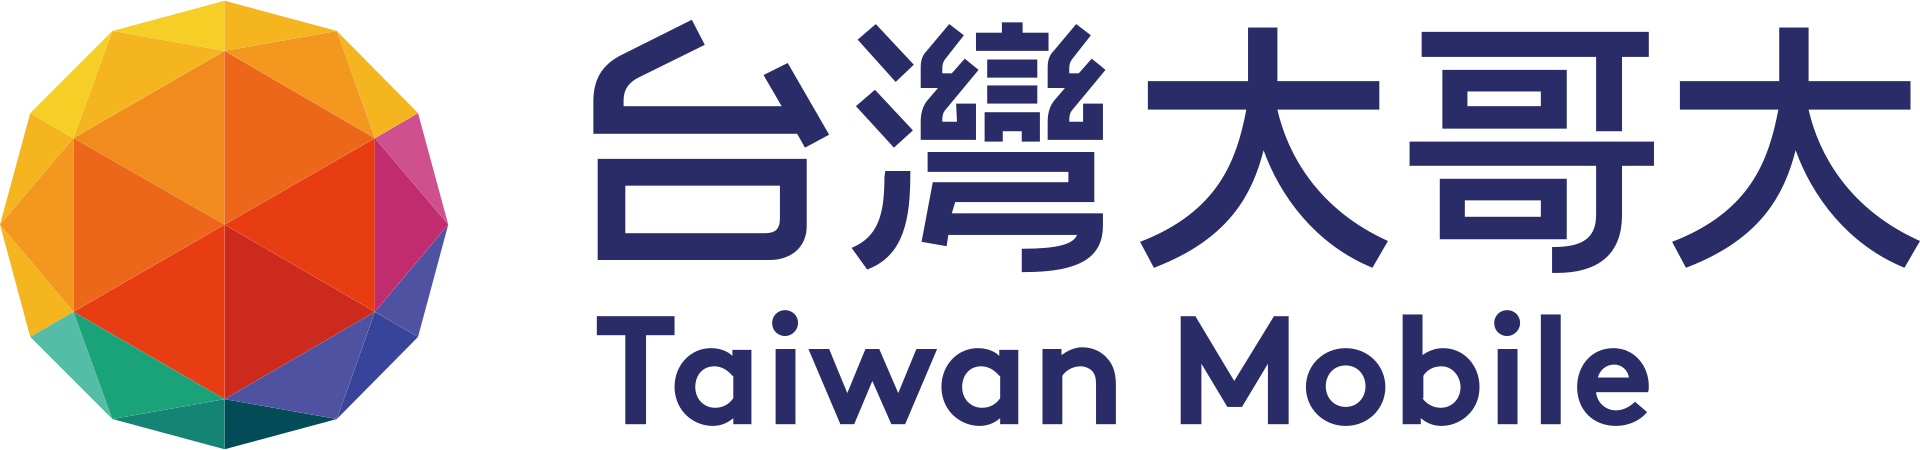 Tauwan Mobile